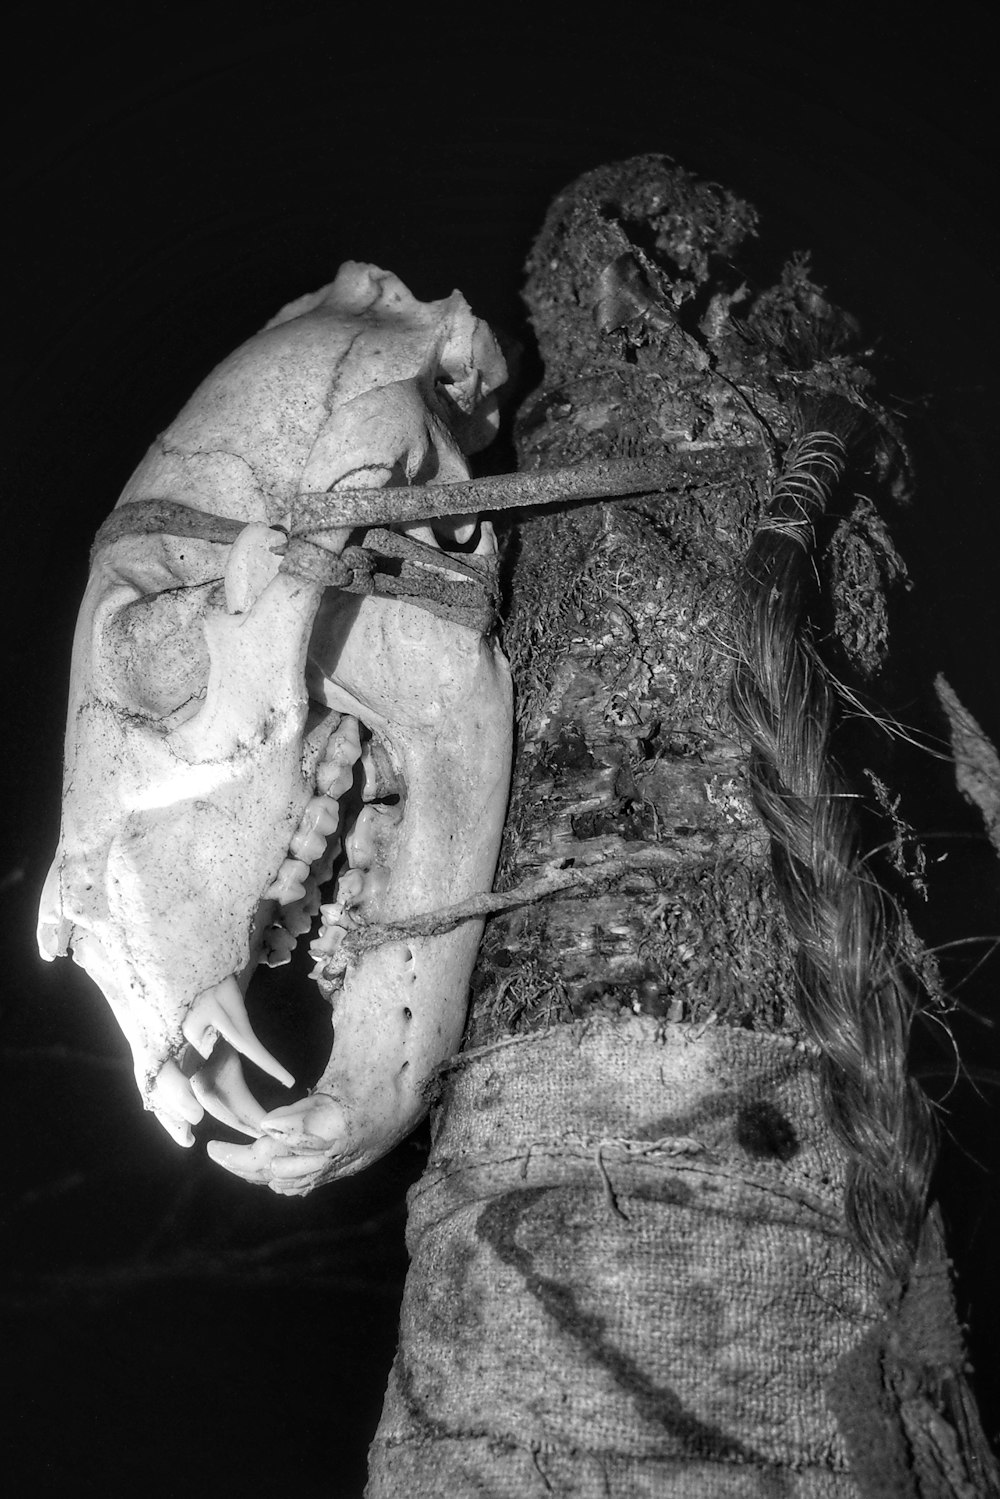 人間の頭蓋骨のグレースケール写真